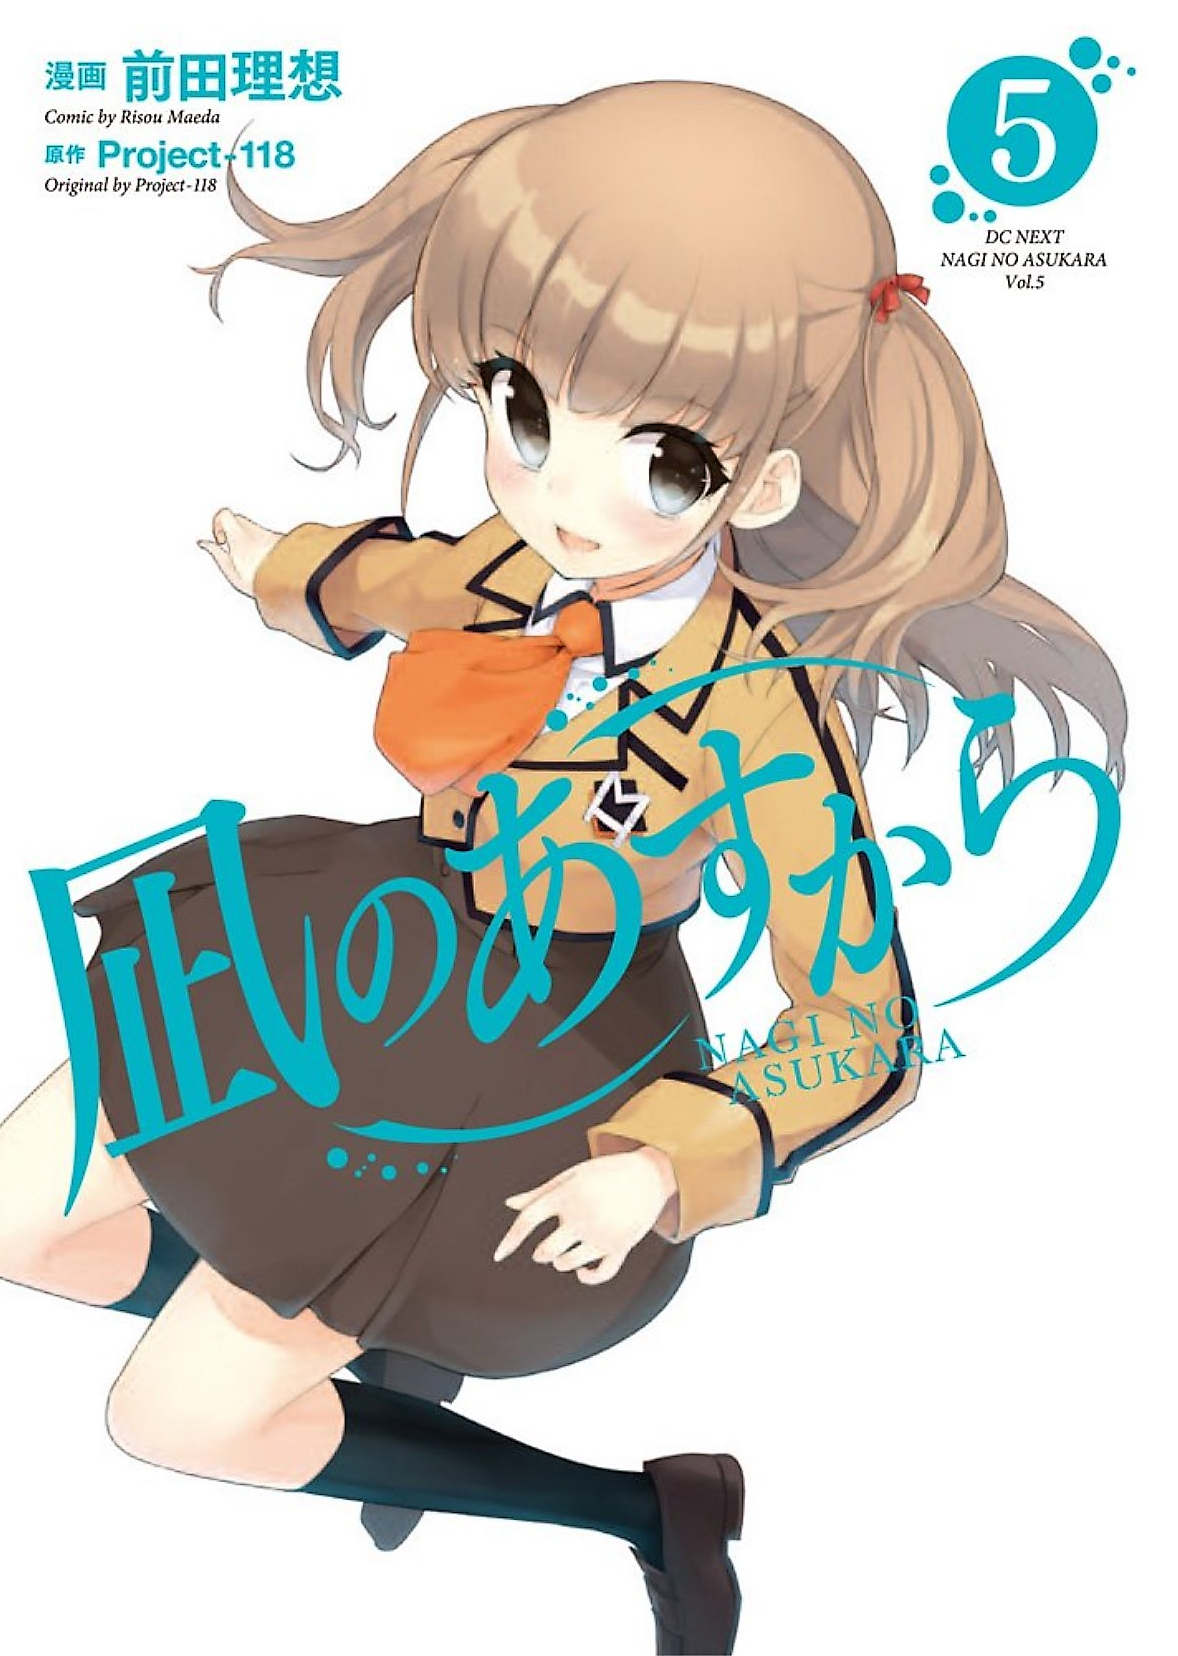 Read Nagi no Asukara by Project-118 Free On MangaKakalot - Chapter 5